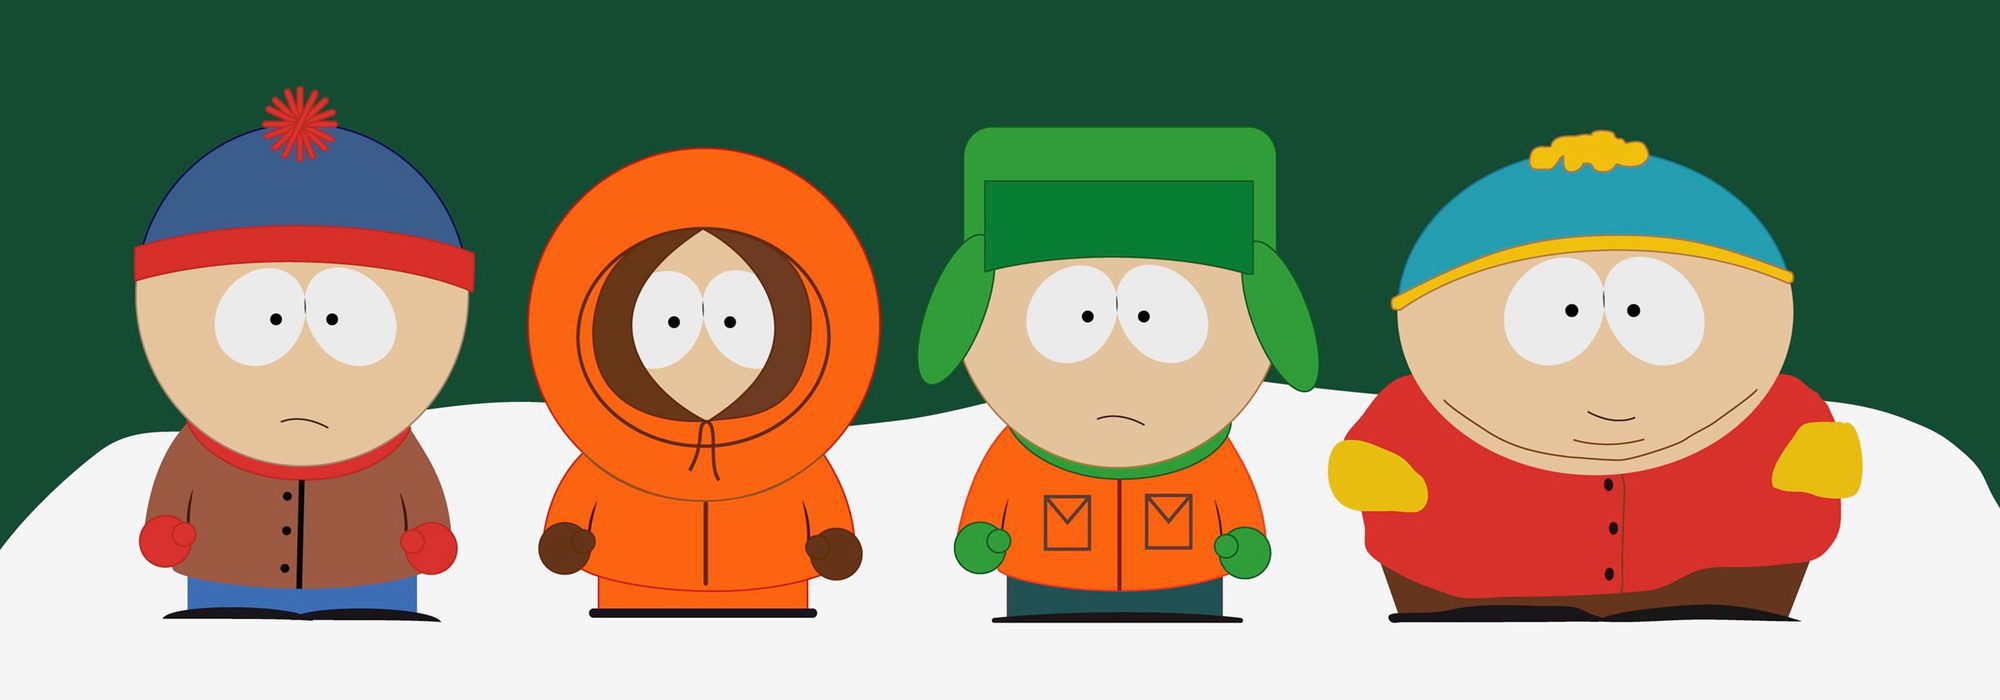 Capítulos South Park: Todos los episodios